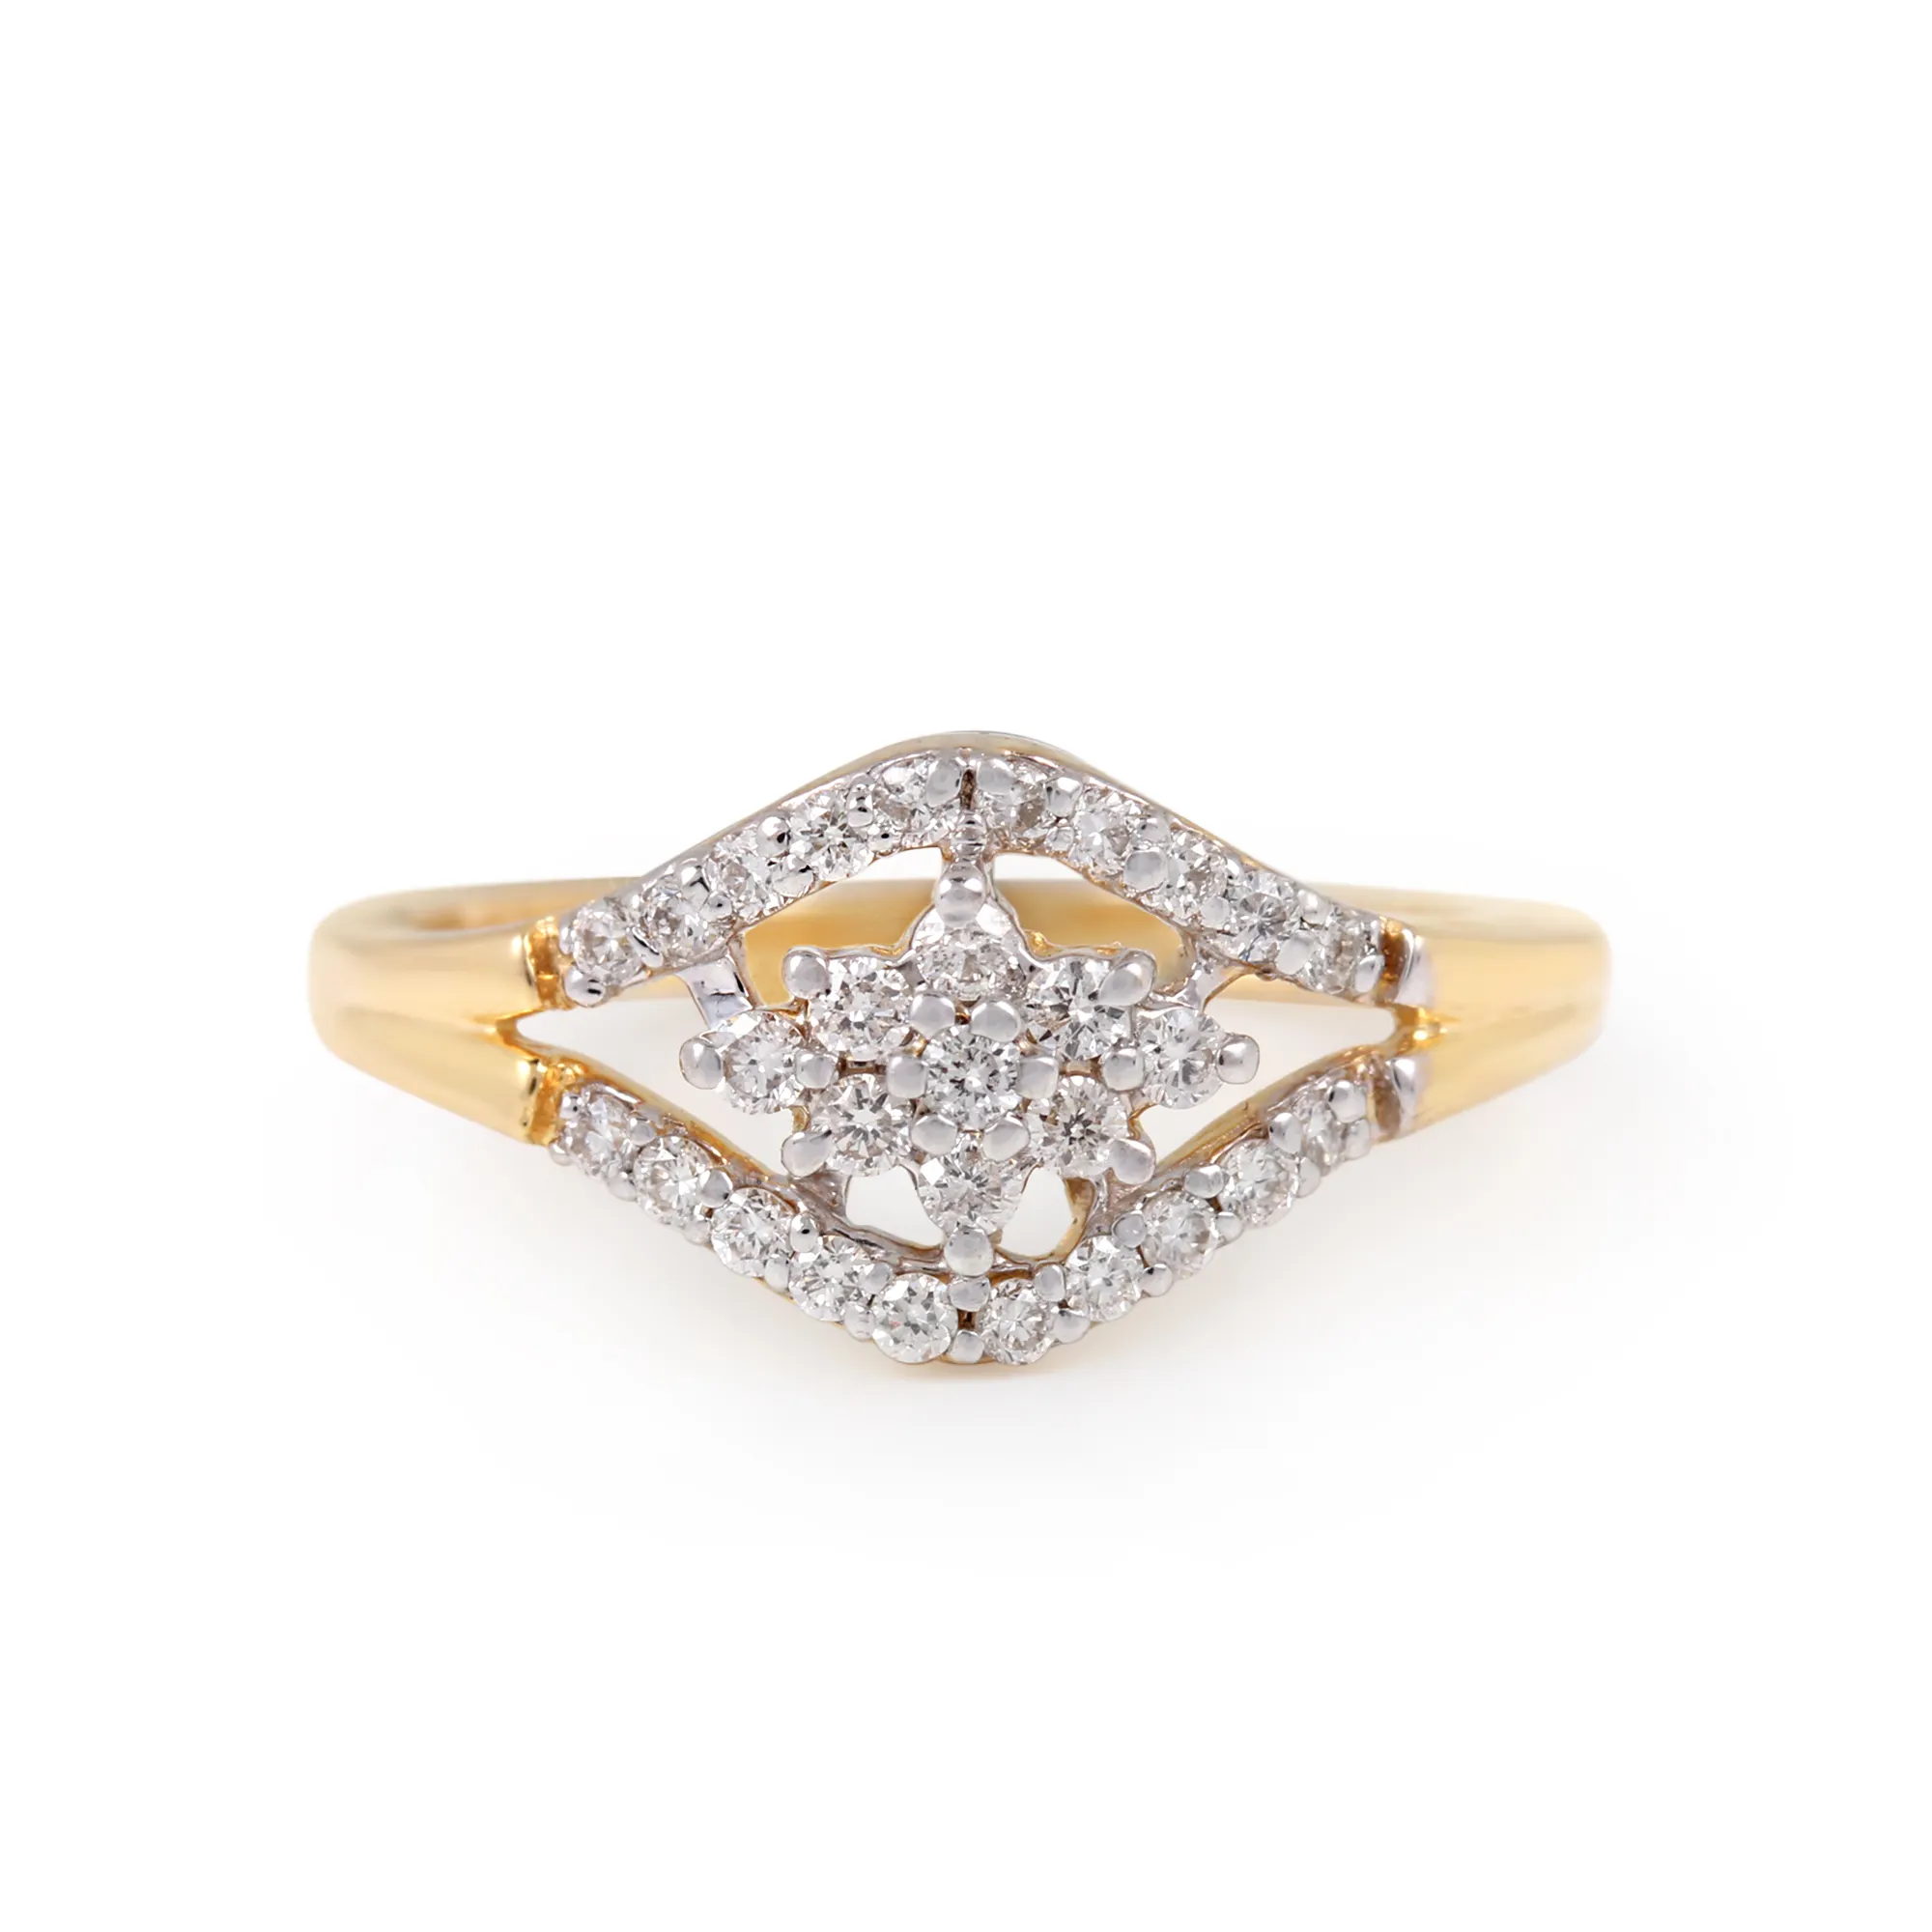 प्राकृतिक रूप से तैयार हीरे की शादी की डिजाइनर अंगूठी 14k ठोस पीले सोने के जन्मदिन के उपहार में बनाई गई